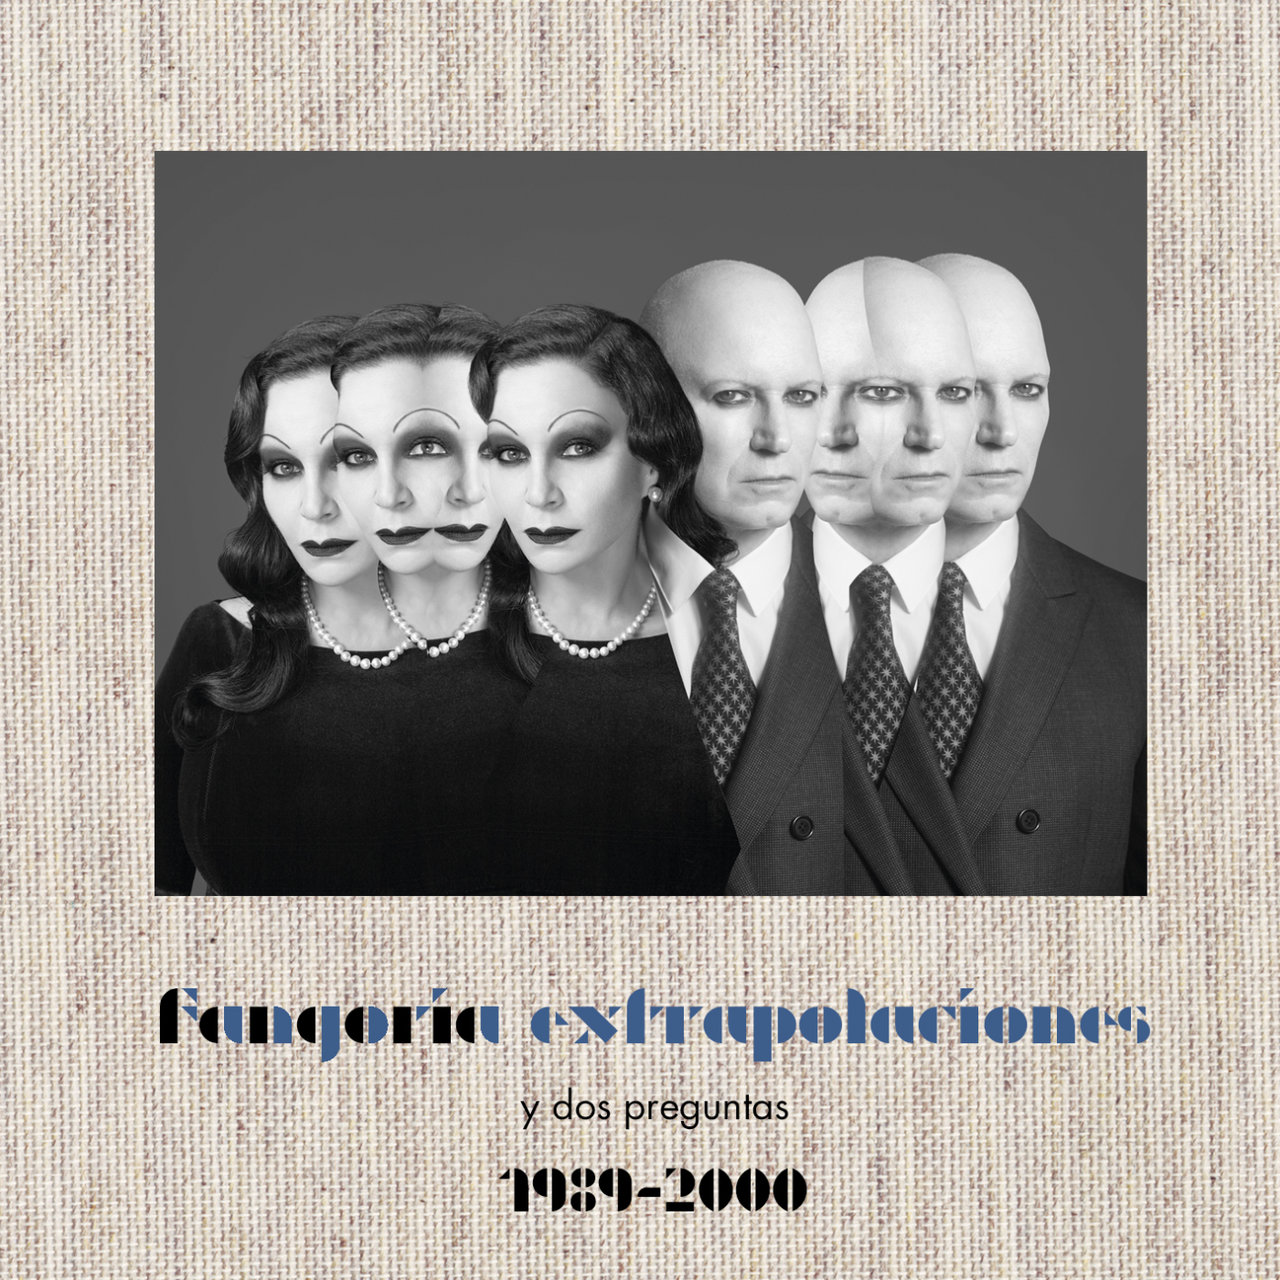 Fangoria Extrapolaciones y dos preguntas 1989-2000 cover artwork